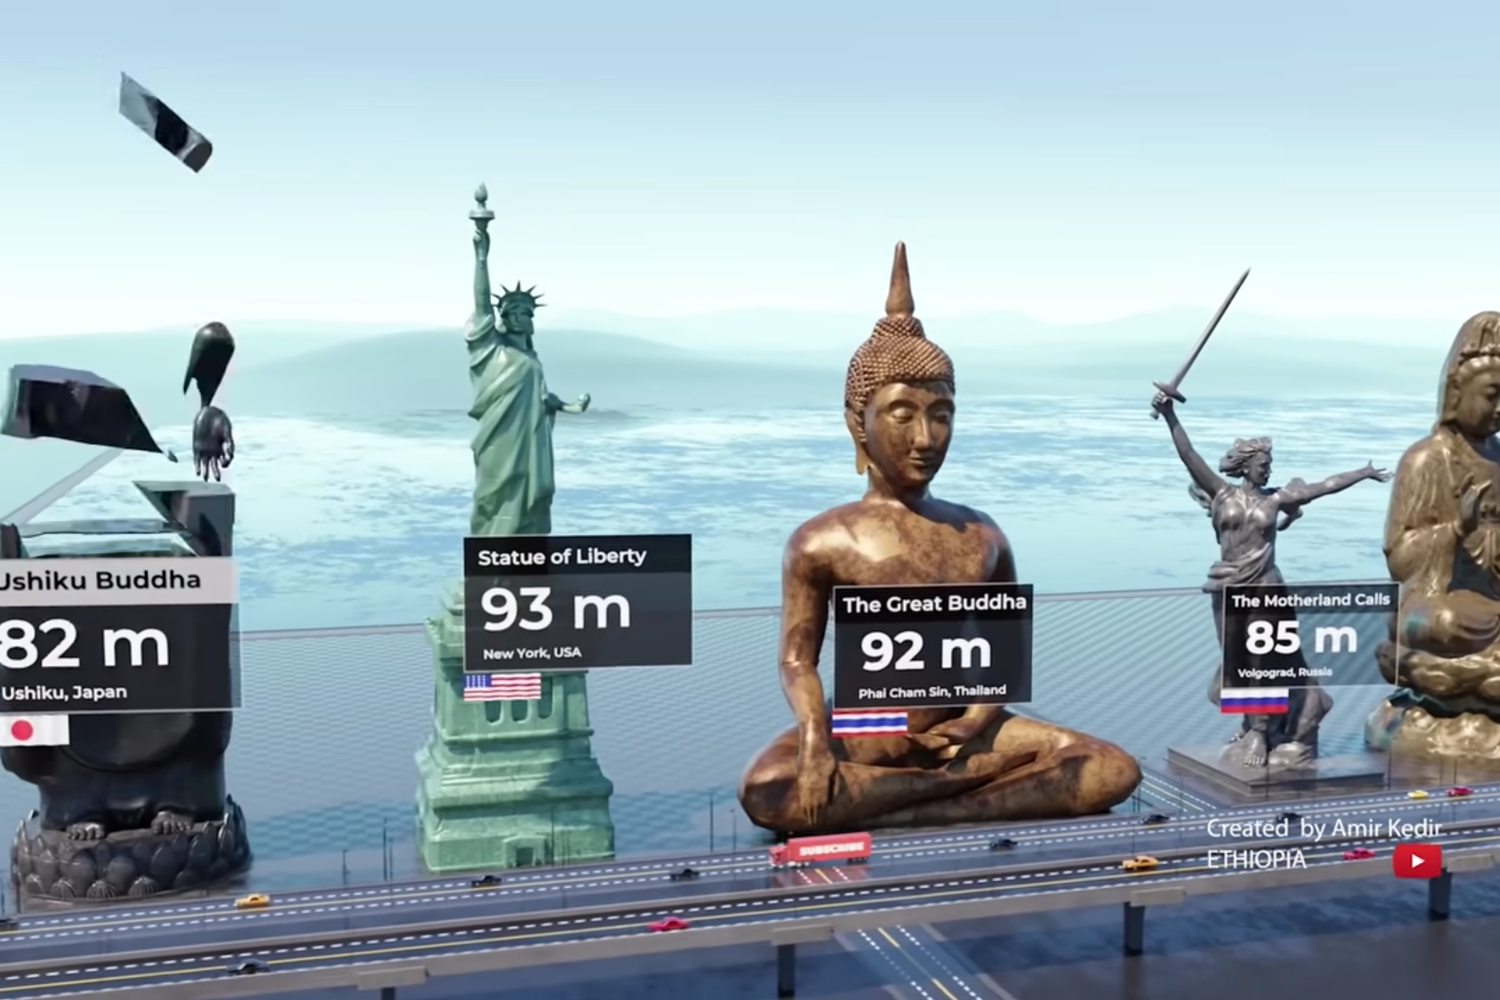 Что выше — статуя Свободы или скульптура «Родина-мать»? 3D-аниматор  сравнивает самые высокие монументы в мире - Афиша Daily